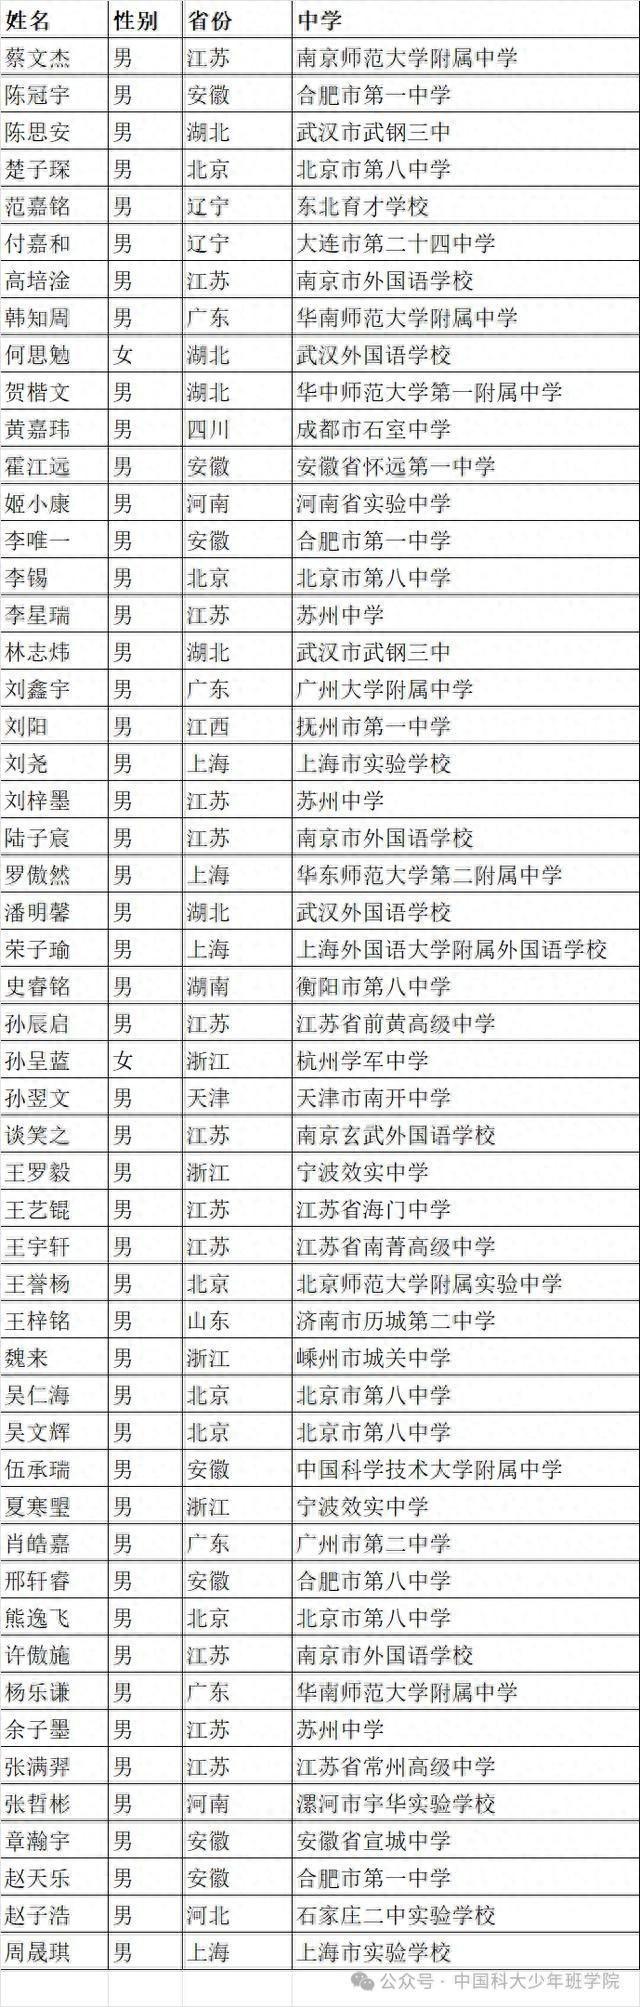 中科大少年班录取名单公示 北京6位“小孩哥”被录取